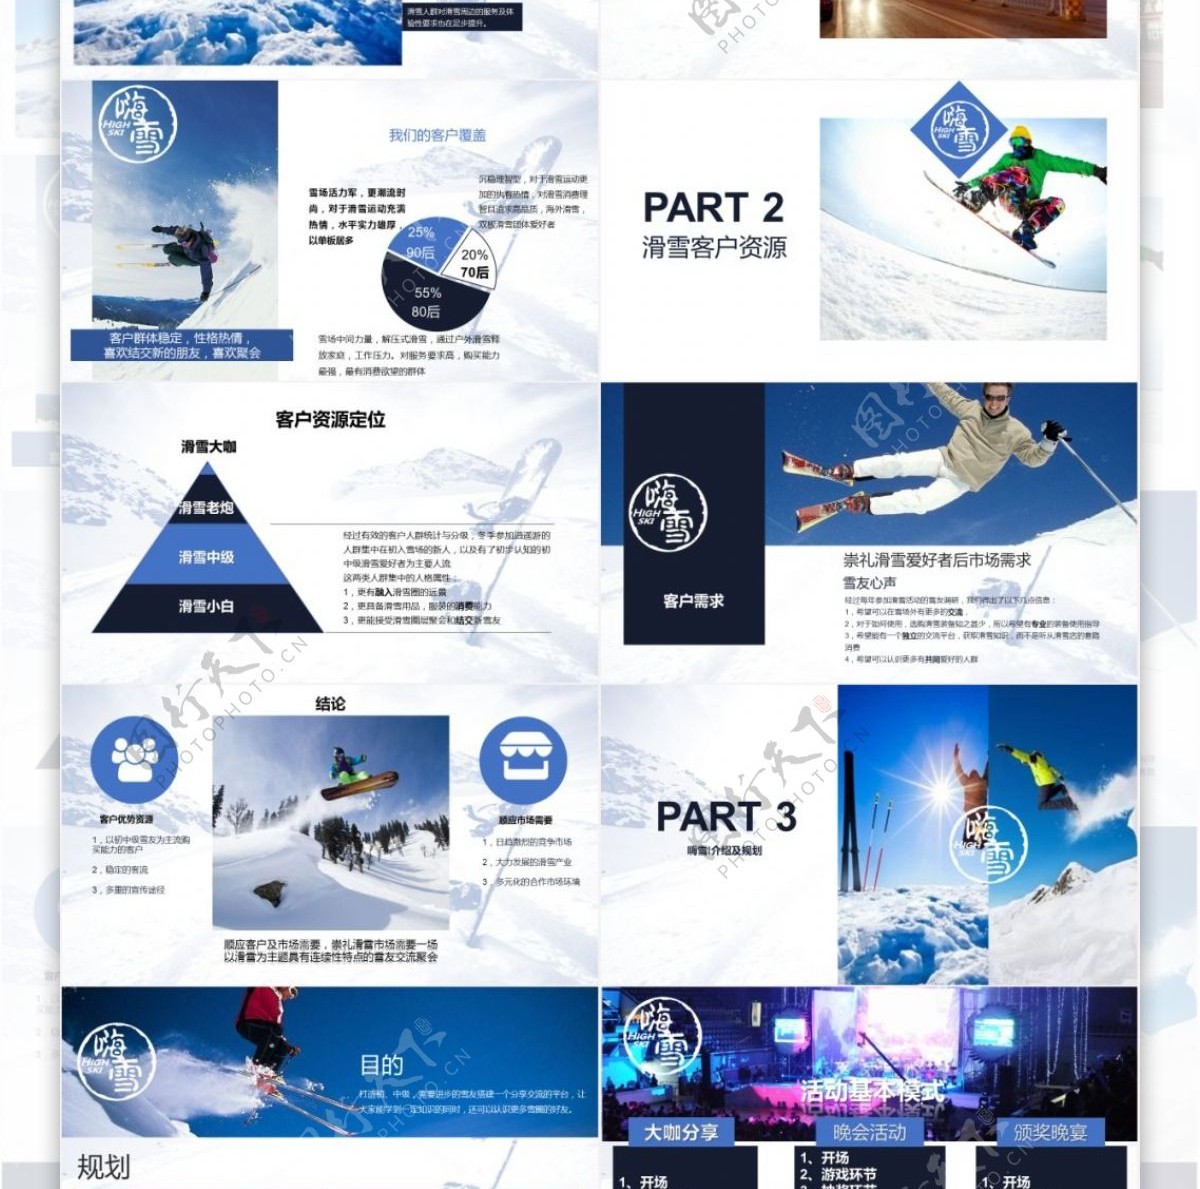 滑雪产品分享会及创业计划介绍PPT模板